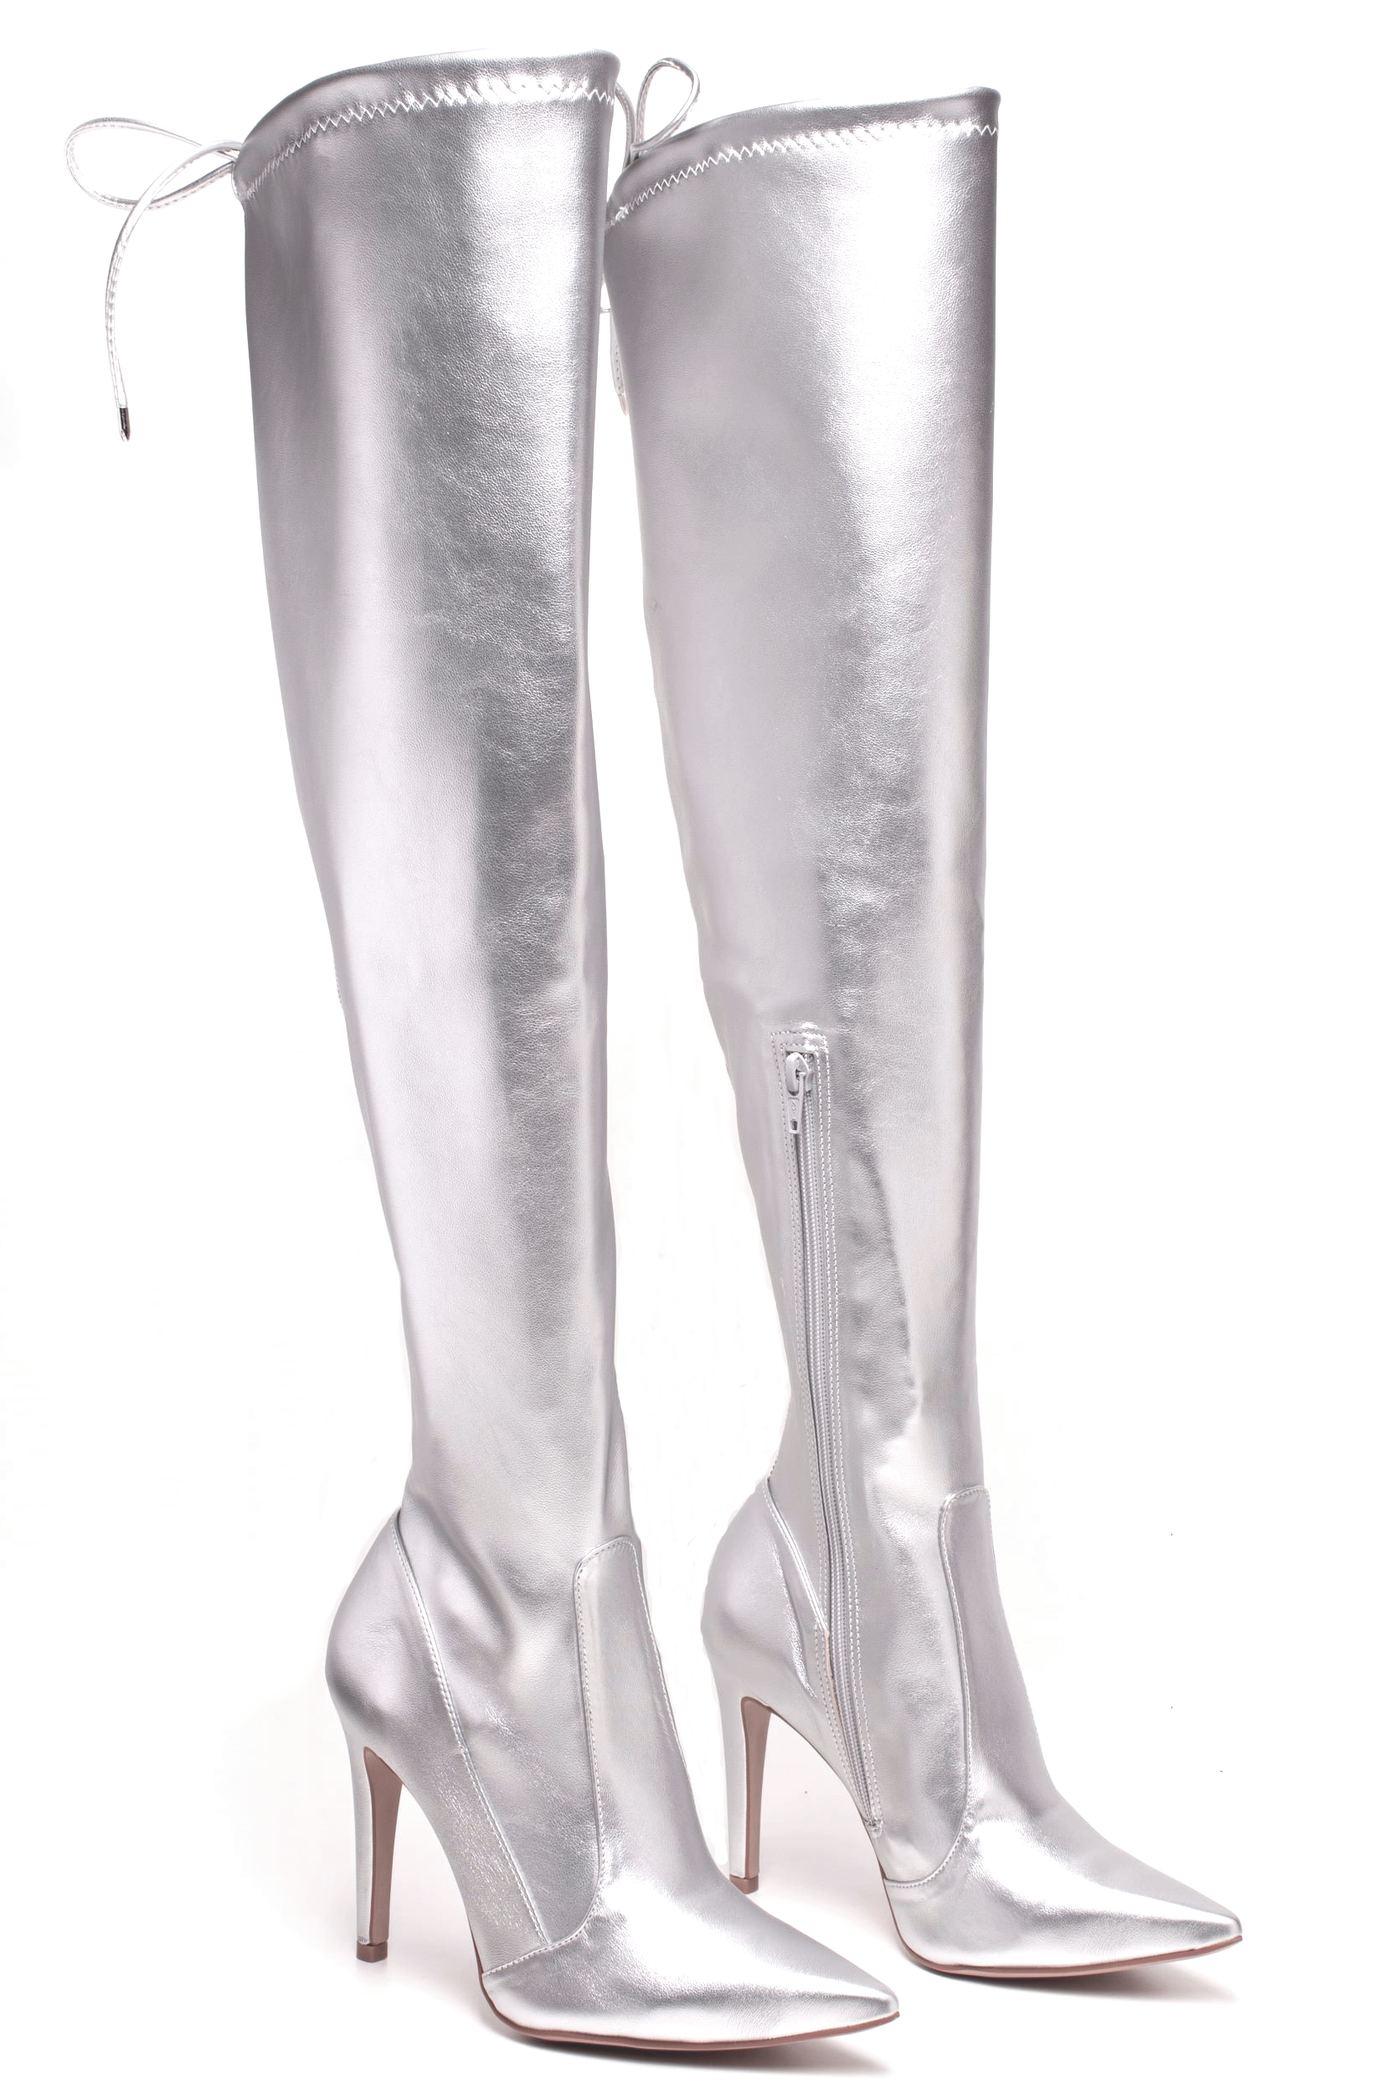 Silberne STARLIGHT Overknees Legging-Stiefel mit Schnürung zur Weitenregulierung am Oberschenkel